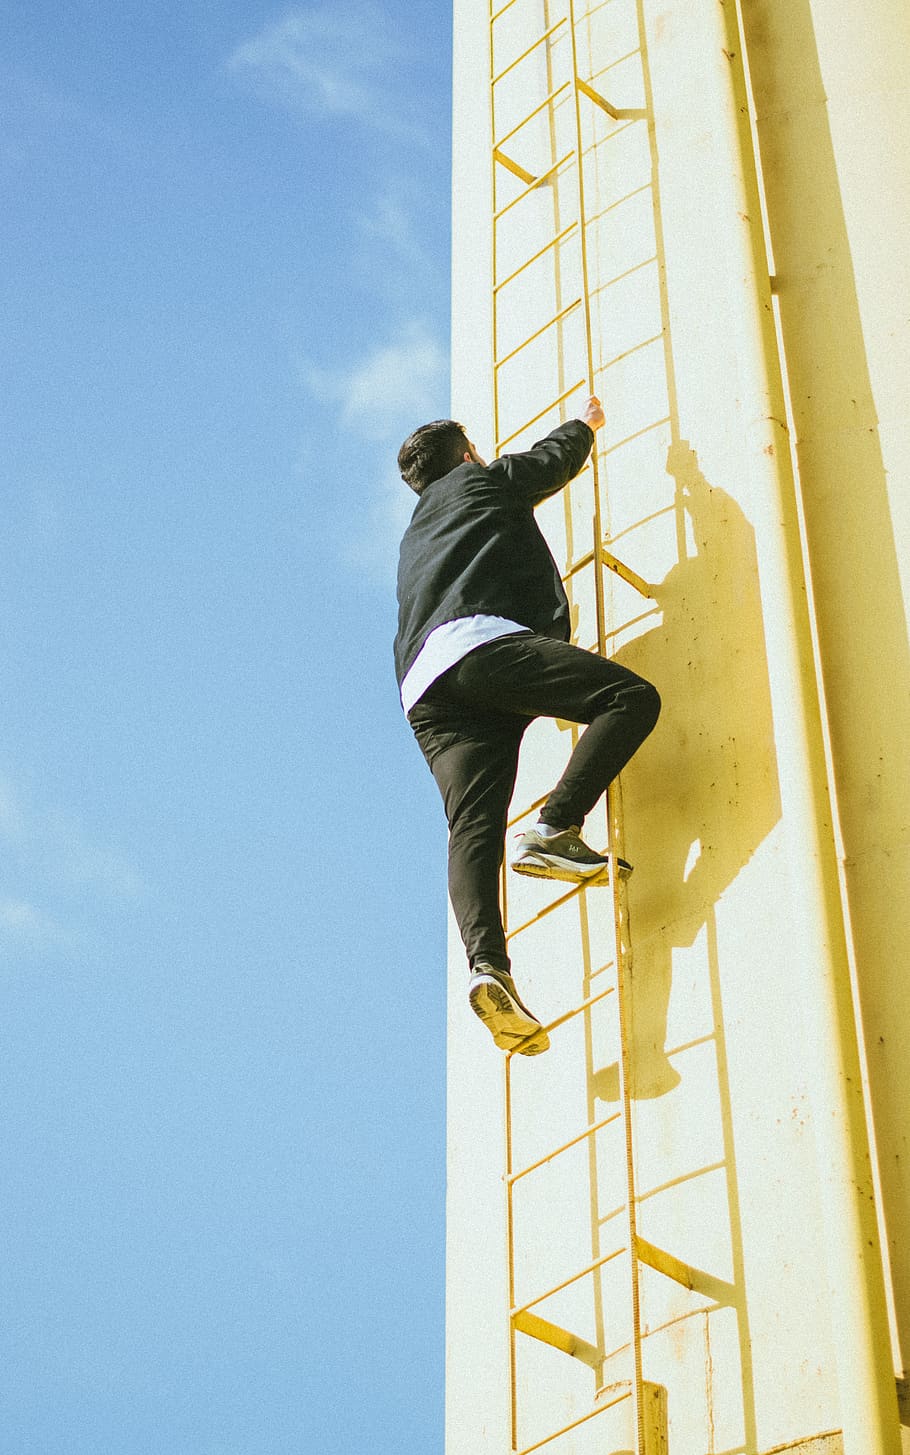 man climbing on ladder during daytime, footwear, shoe, apparel, HD wallpaper